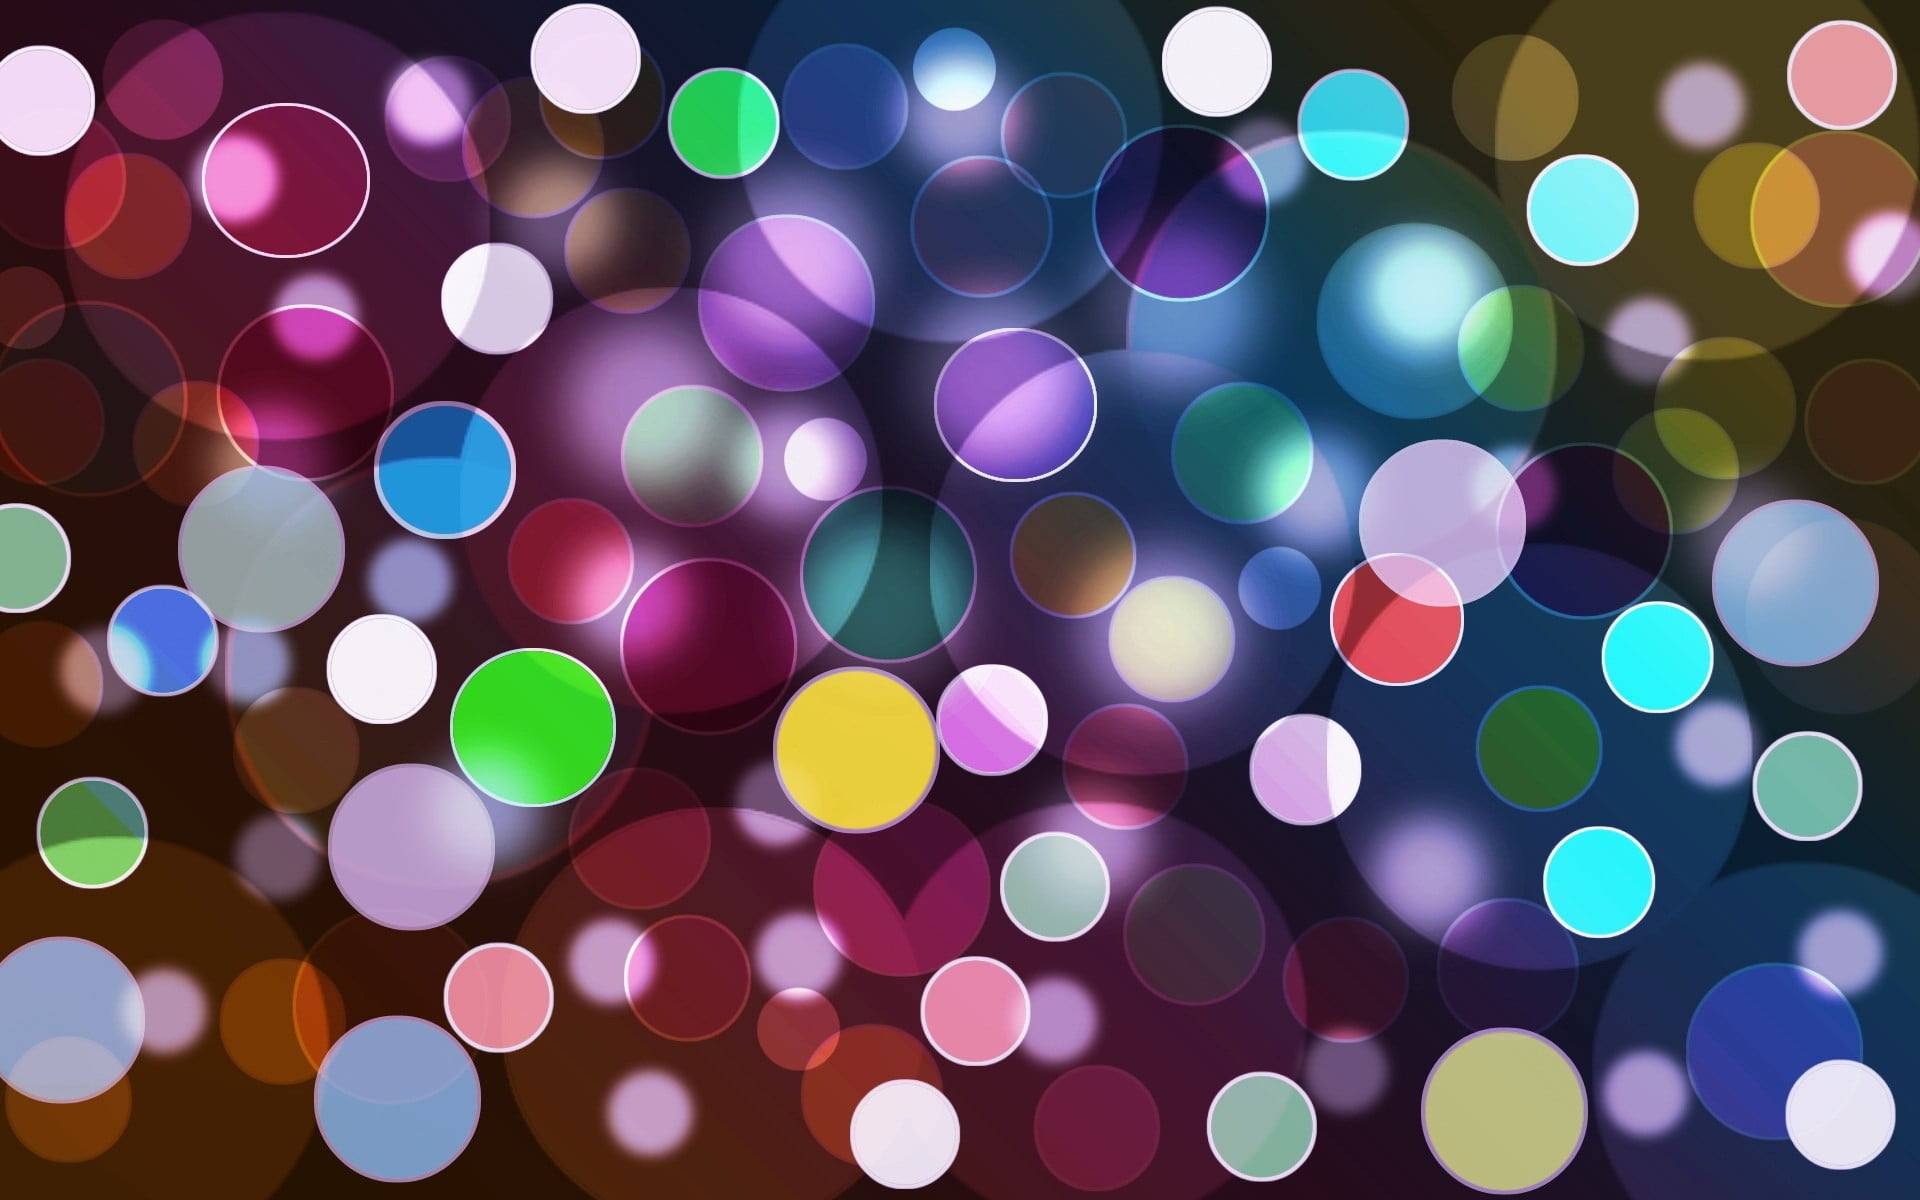 purple bubbles digital wallpaper #sphere #abstract #3D #1080P #wallpaper  #hdwallpaper #desktop | Bubbles wallpaper, Digital wallpaper, Glass marbles